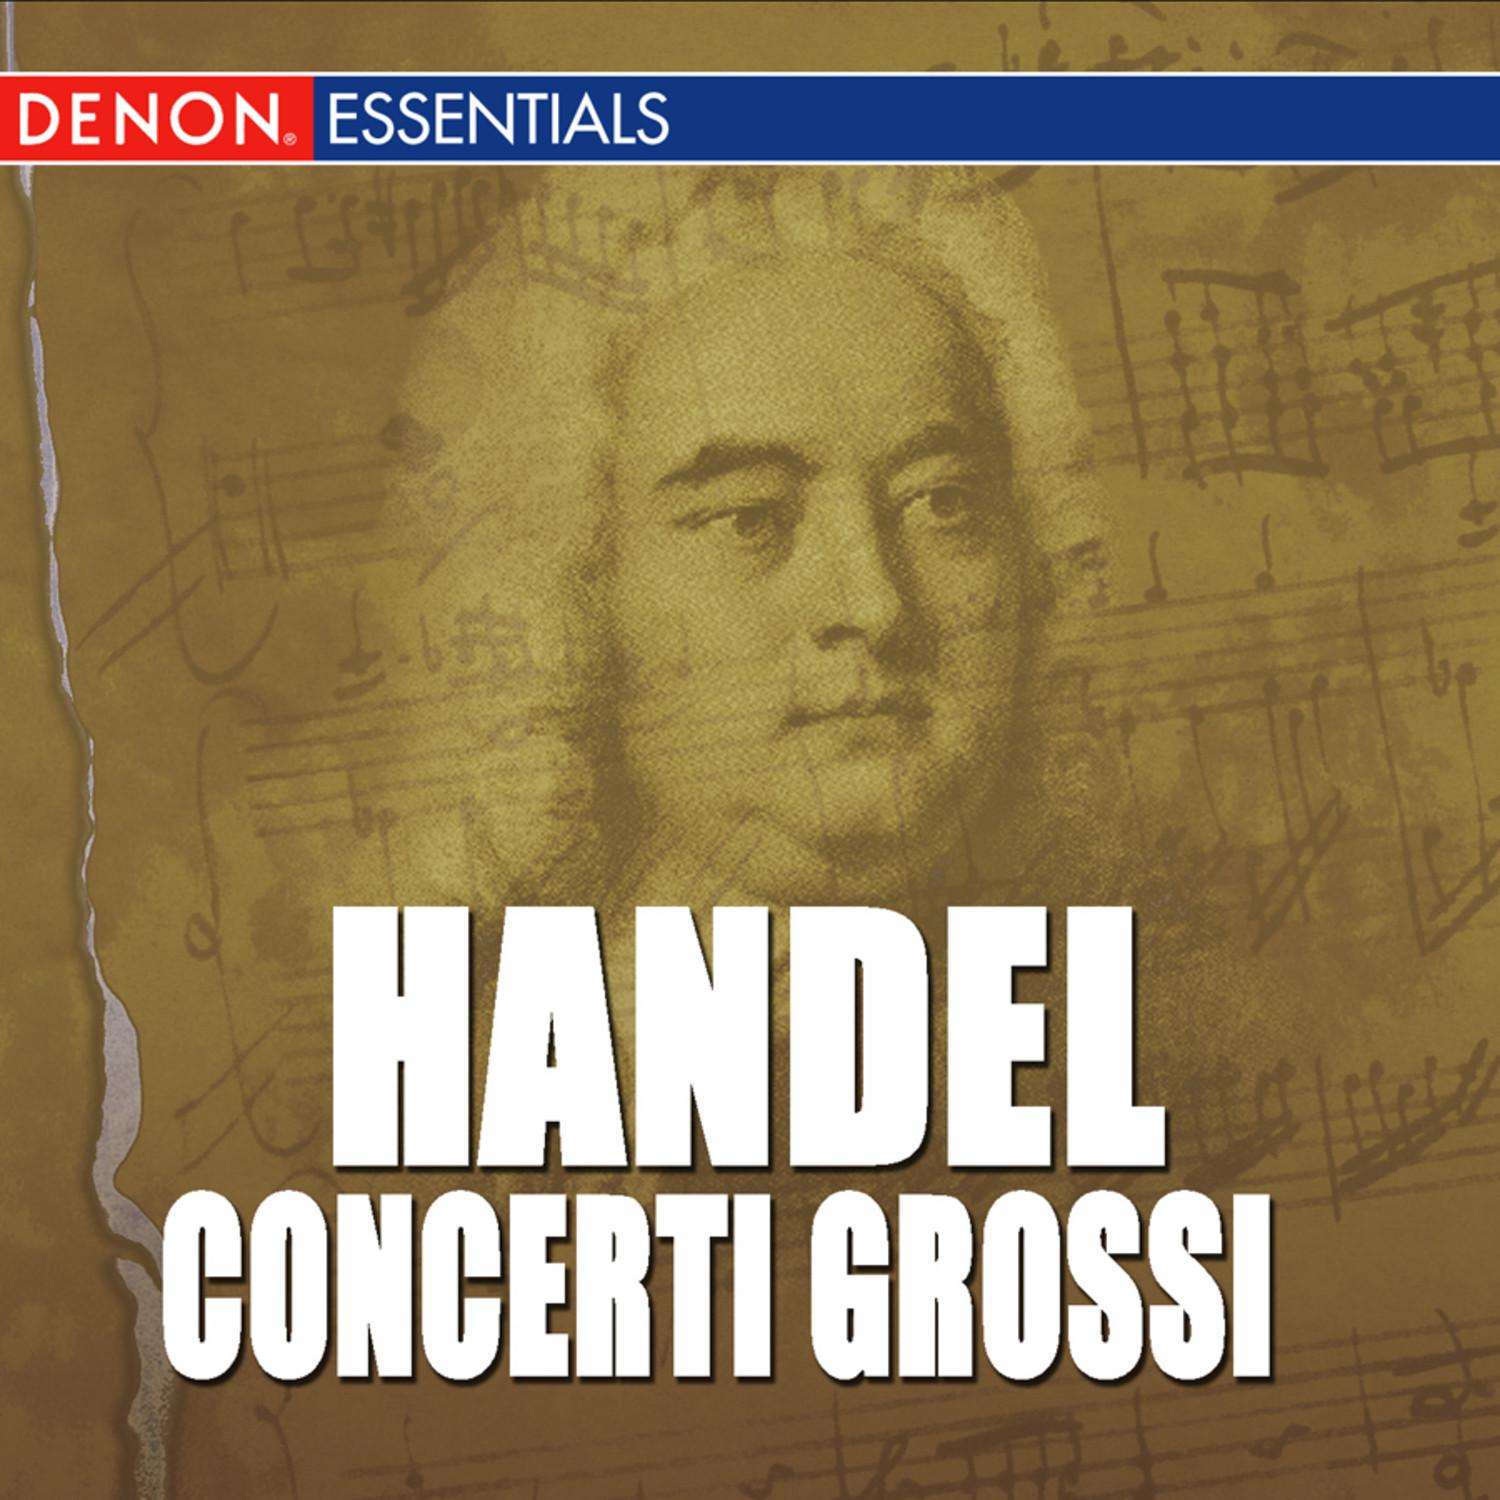 Concerto Grosso, Op. 6: No. 3 in E Minor, HWV 321: II. Andante